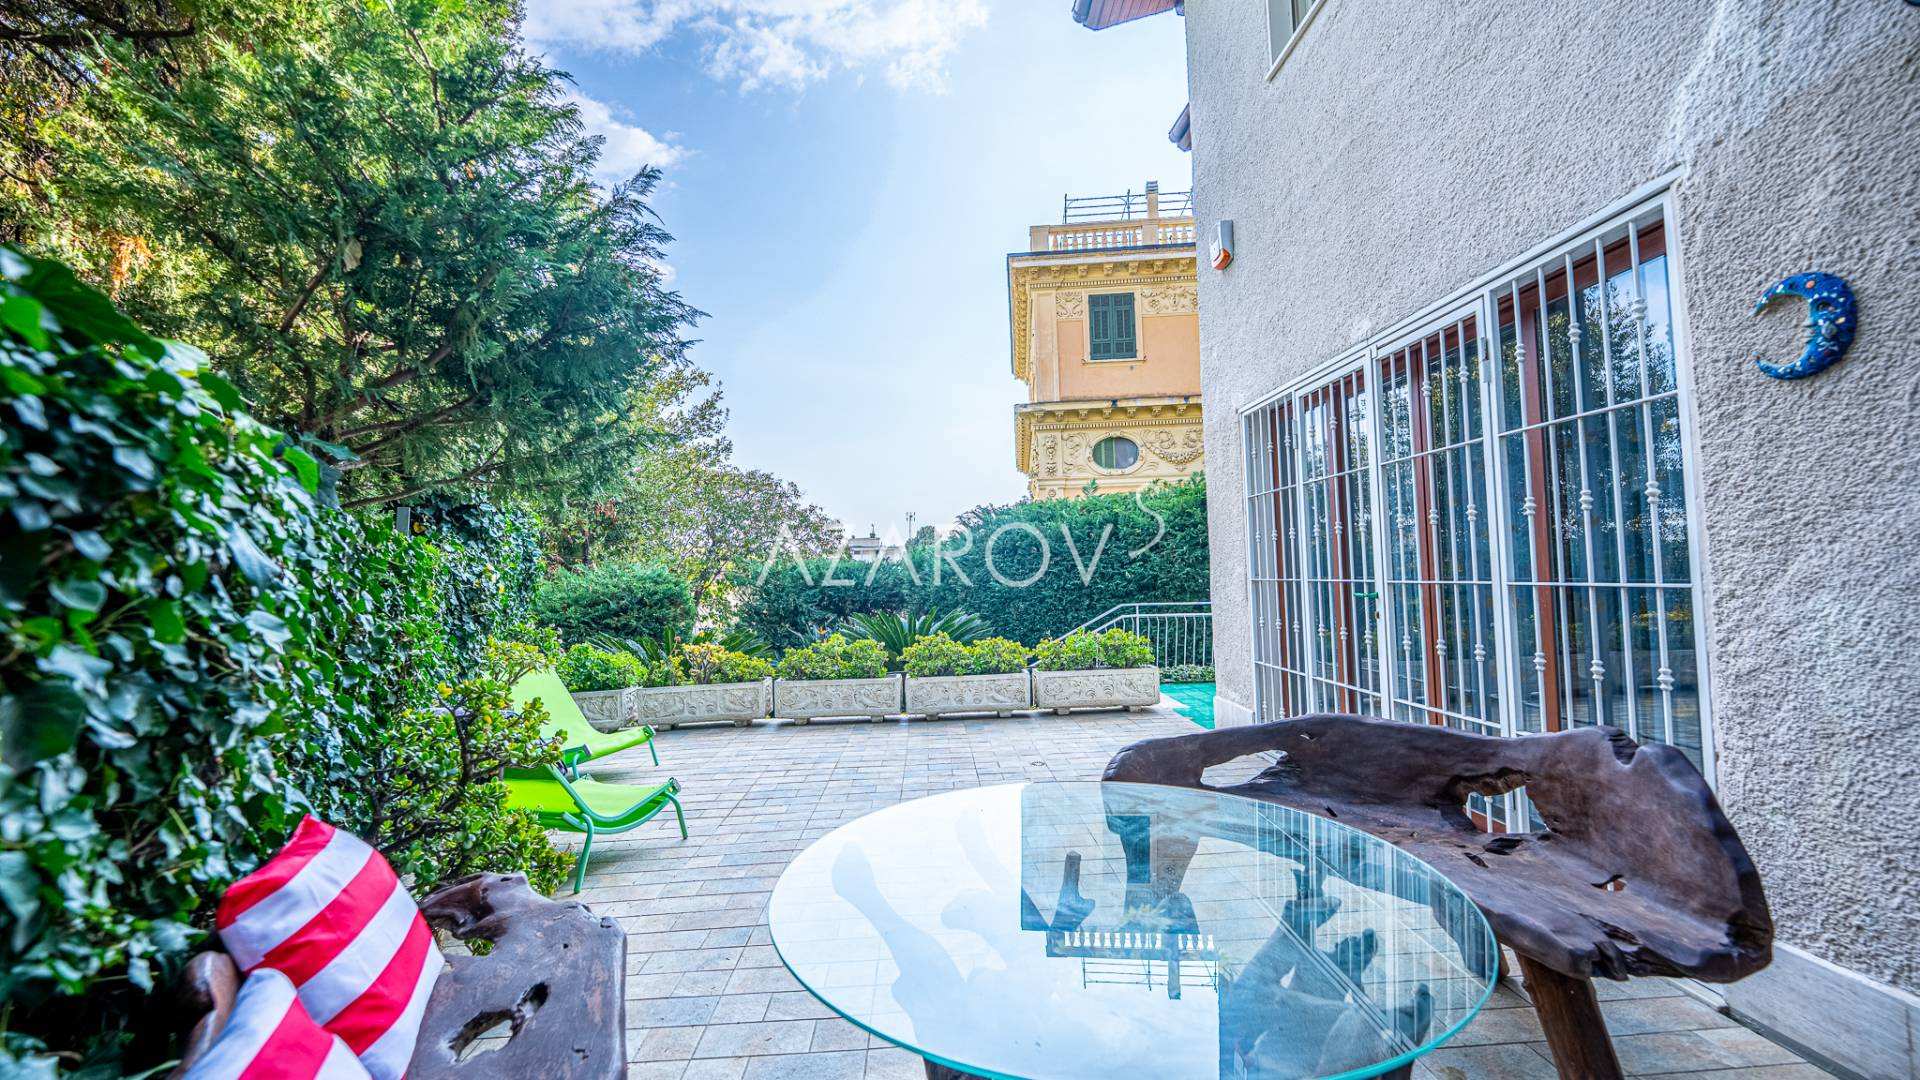 Villa i centrum af Sanremo nær havet